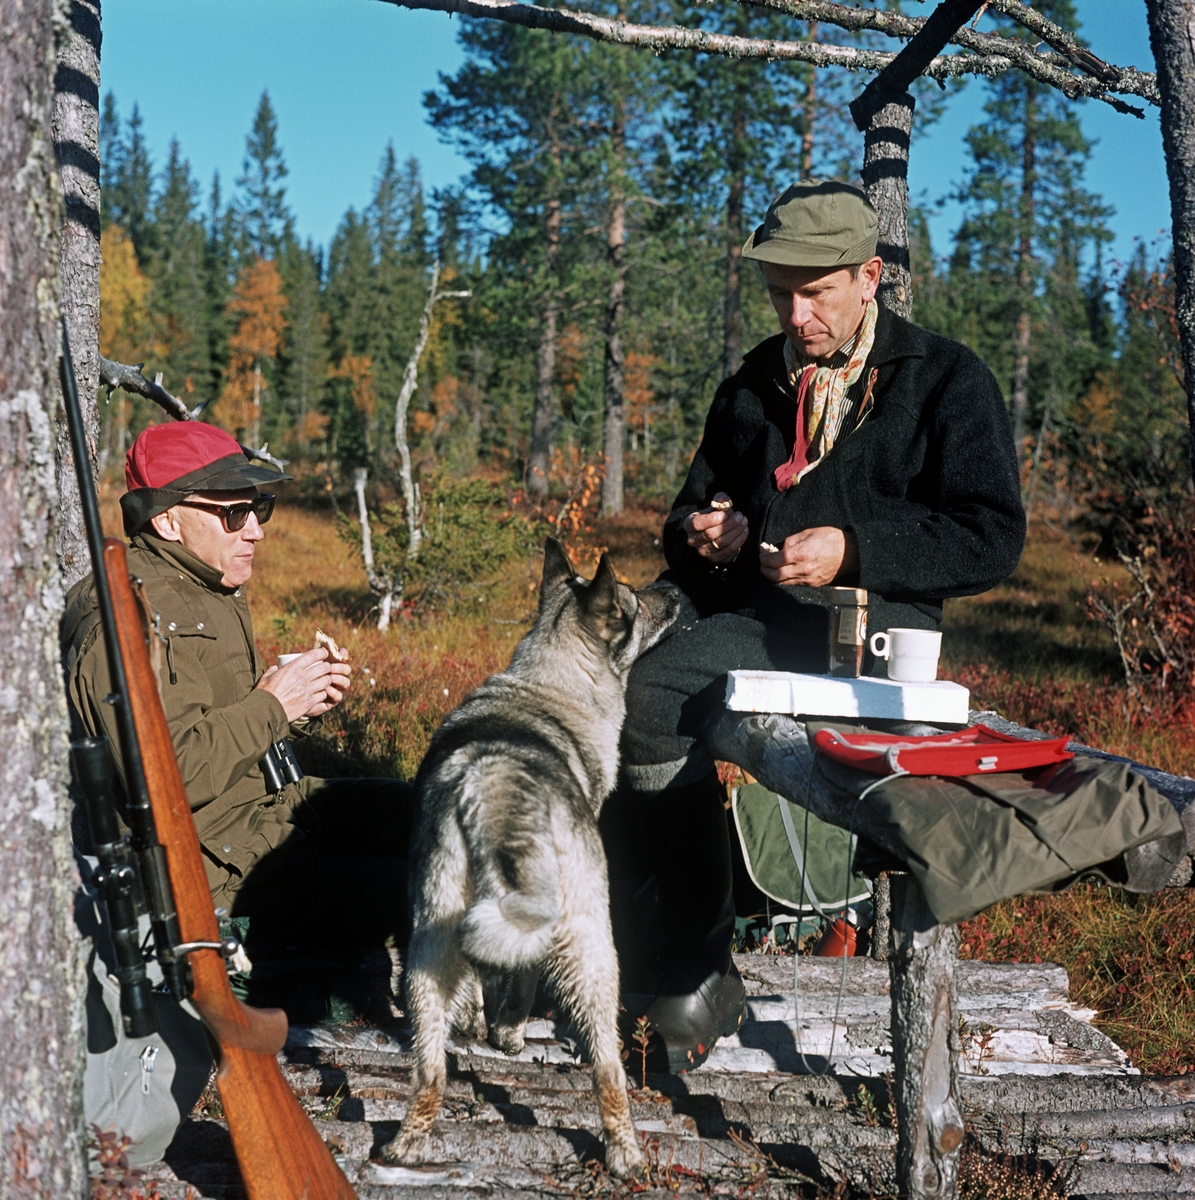 To elgjegere nyter kaffe og brødmat på en elgpost i myrlandskapet i Slemdalen i Åmot i Hedmark.  Jegeren til venstre satt på et underlag av granrajer med ryggen mot en furustamme, mens jaktkameraten til høyre satt på en benk.  Mellom karene sto en elghund  som viste stor interesse for maten.  Et haglegevær sto reist mot en furustamme til venstre i bildet.  Mannen til høyre er Knut Torp. Torp var utdannet forstkandidat (1954), og arbeidet først som skogsjef for firmaet And. H. Kiær & co., seinere for A/S Borregaard, som overtok Kiær-skogene i tillegg til de skogene Borregaard eide fra før.  Torp på denne måten ble Knut Torp fra 1963 skogsjef for arealer på bortimot en million mål fordelt på fire fylker, med Elverum som kontorsted.  Hver høst inviterte han kolleger og enkelte av arbeidsgivers forretningsforbindelser på jakt i noen av disse skogene.

Elgjakt. Storviltjakt. Jeger. Elgjeger.